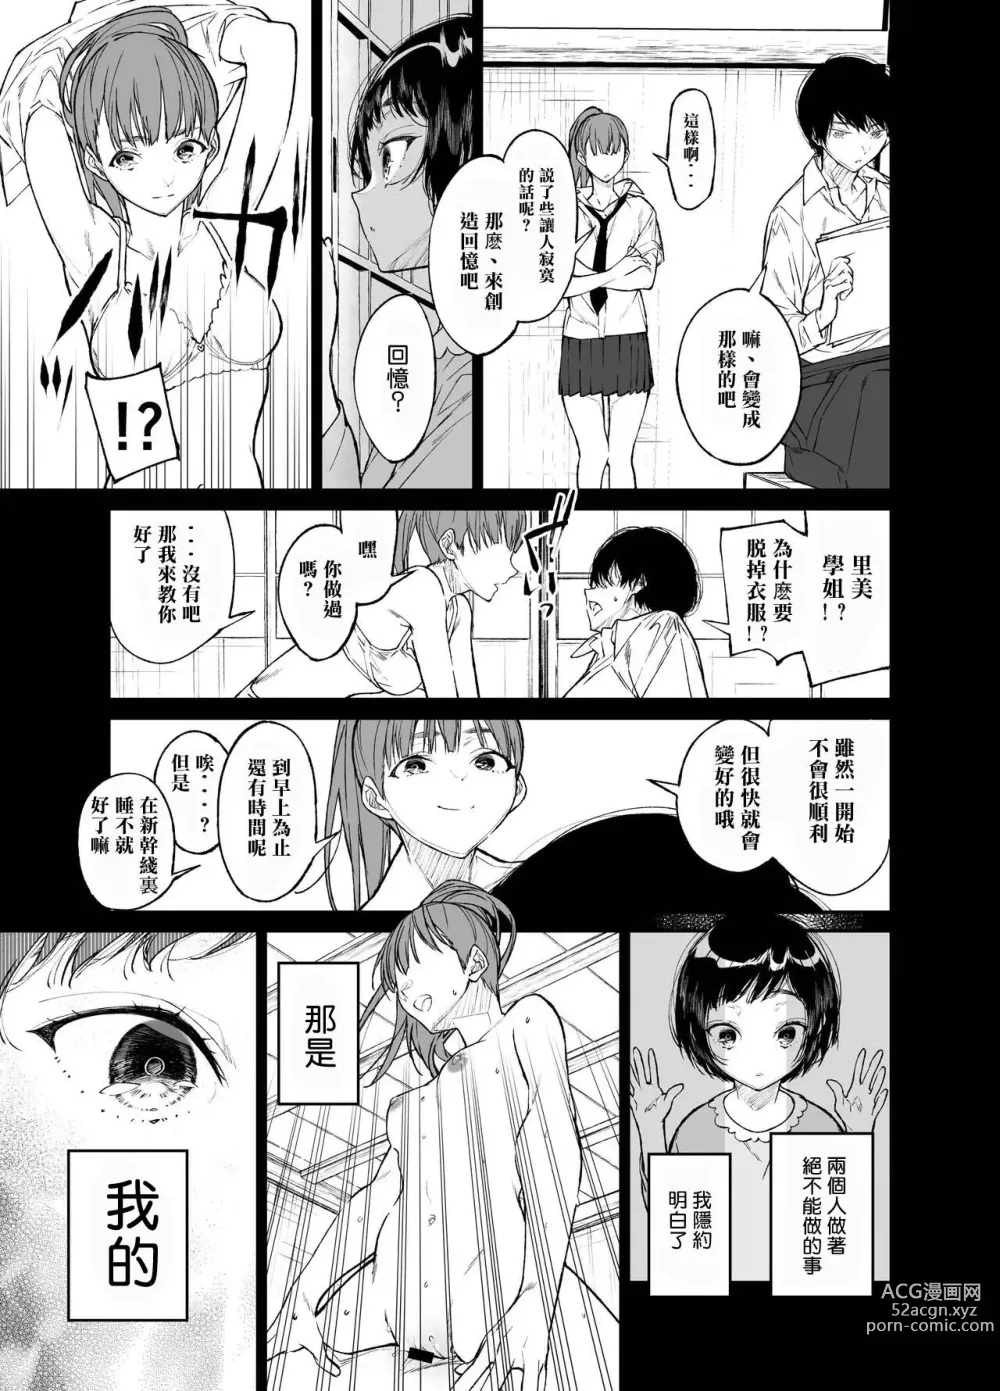 Page 13 of doujinshi Natsu, Shoujo wa Tonde, Hi ni Iru.